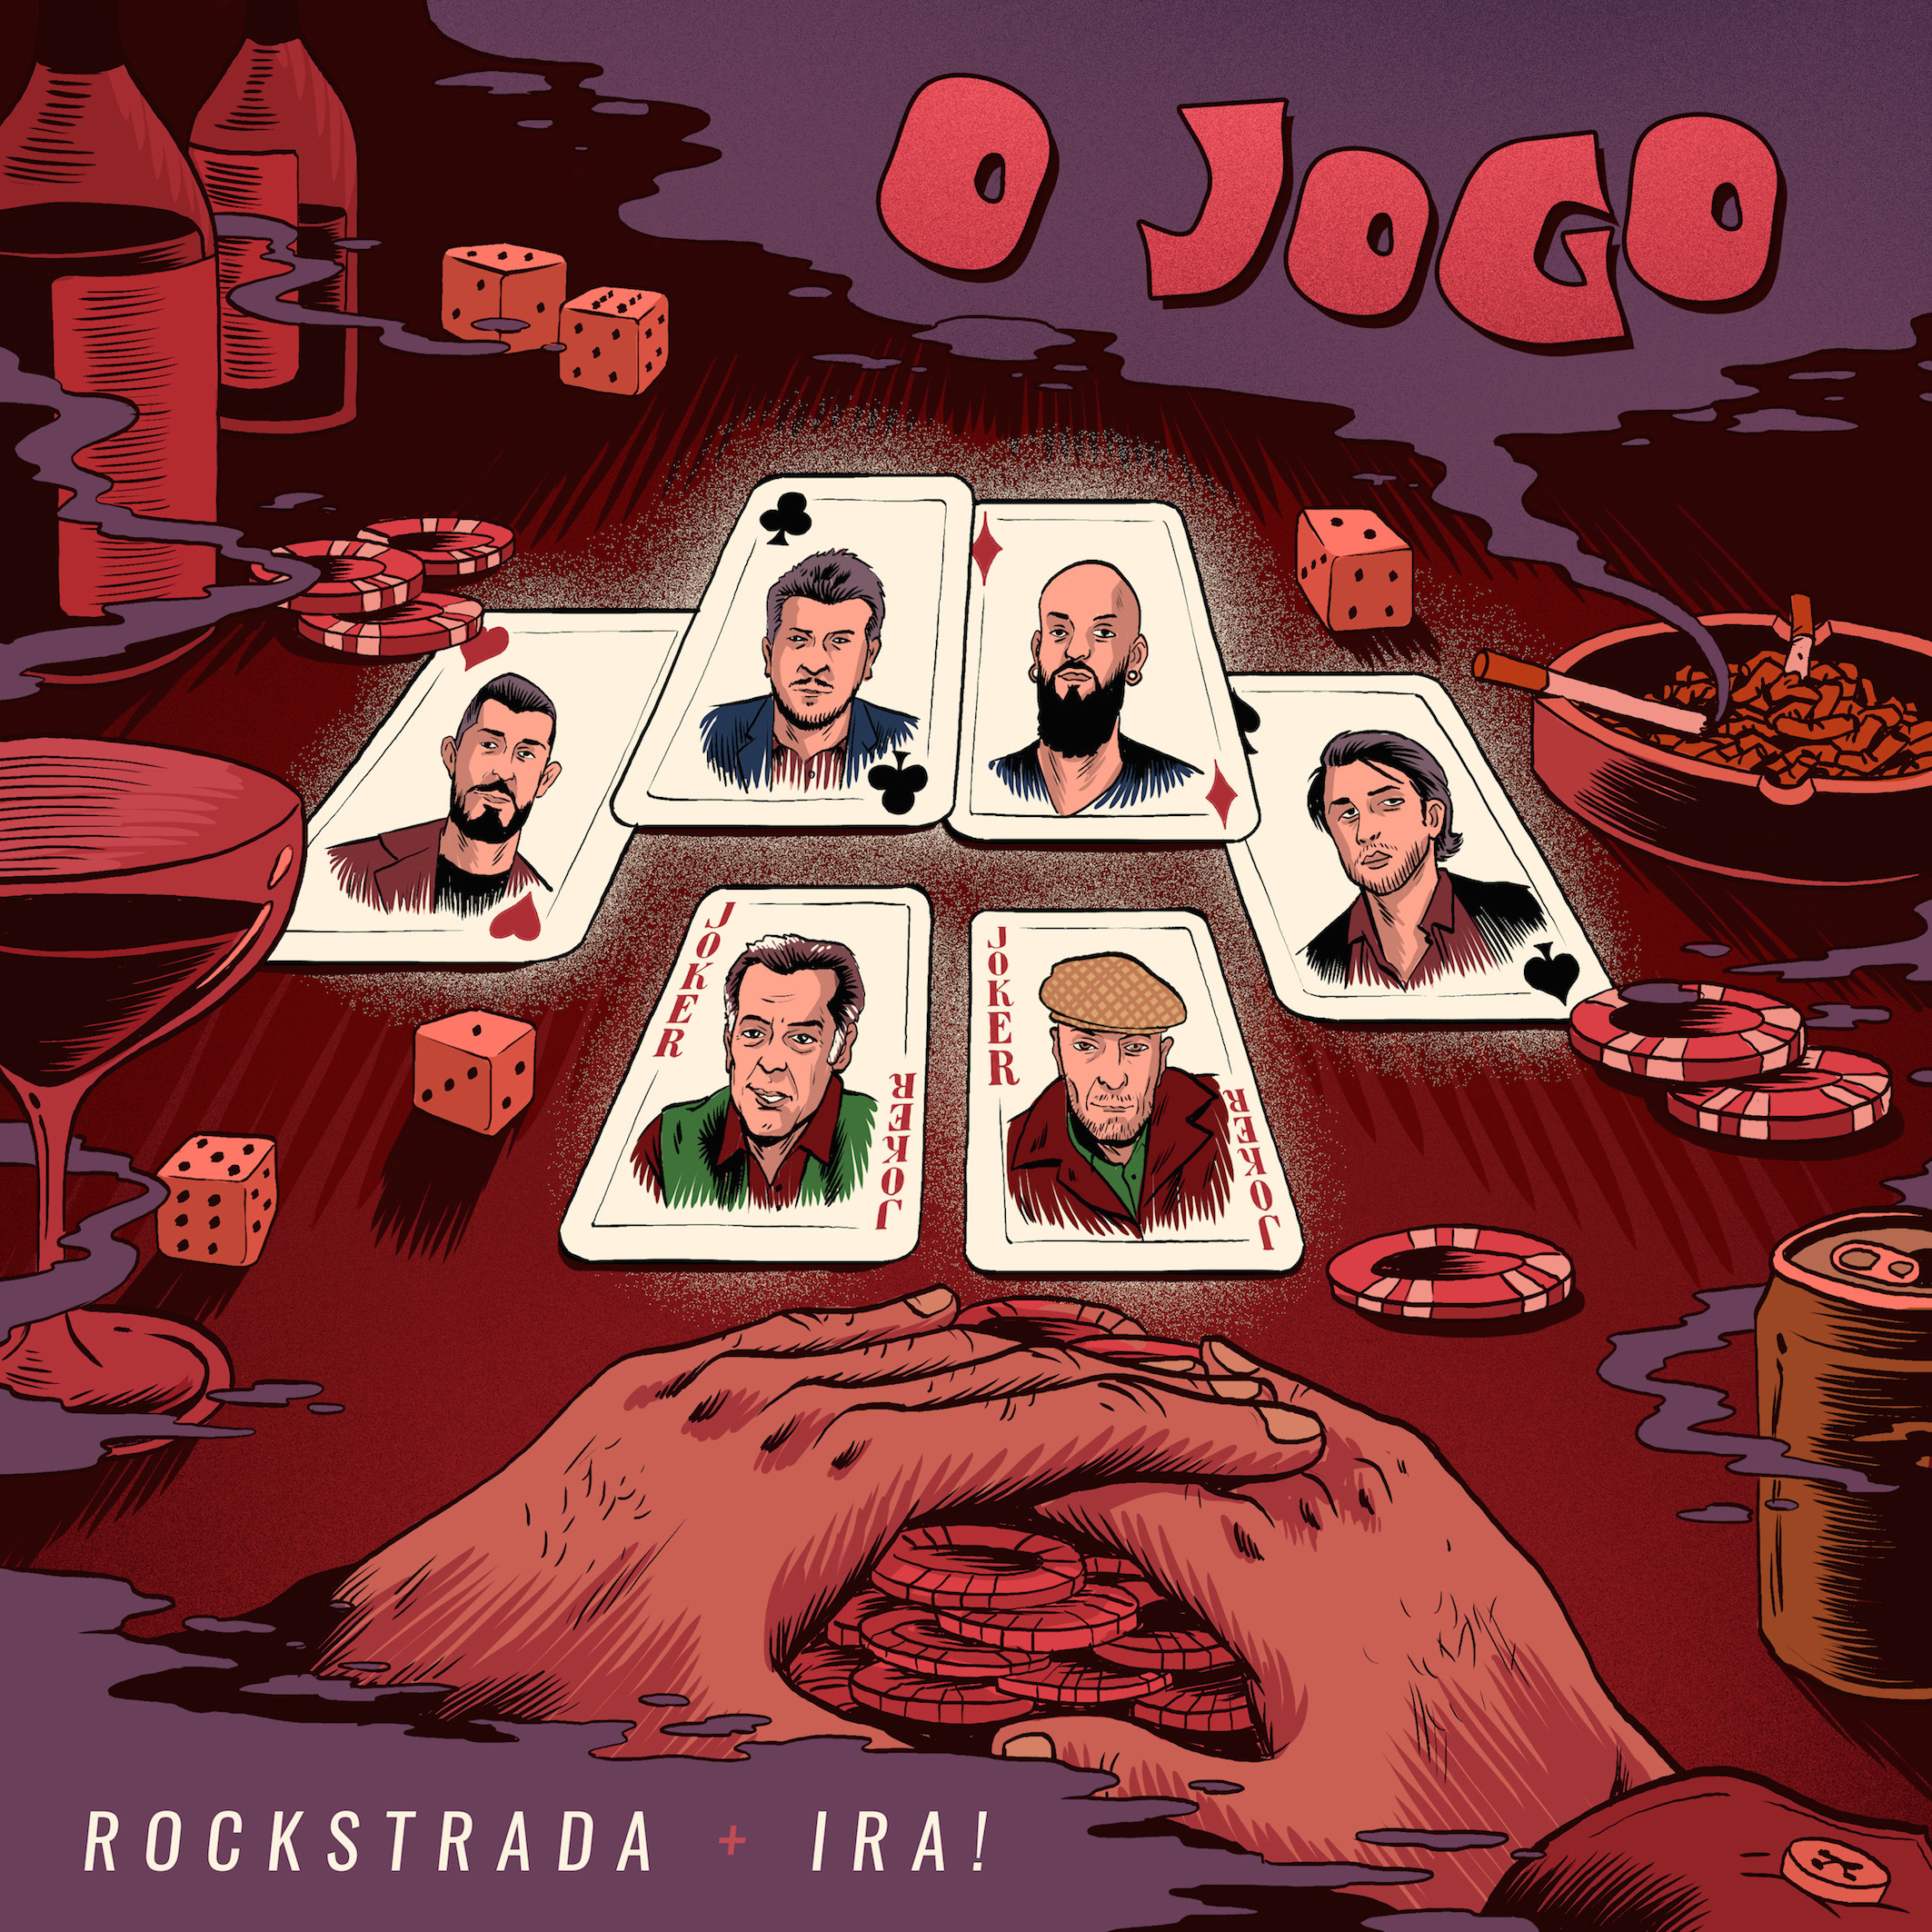 Rockstrada lança “O Jogo” com participação do Ira!